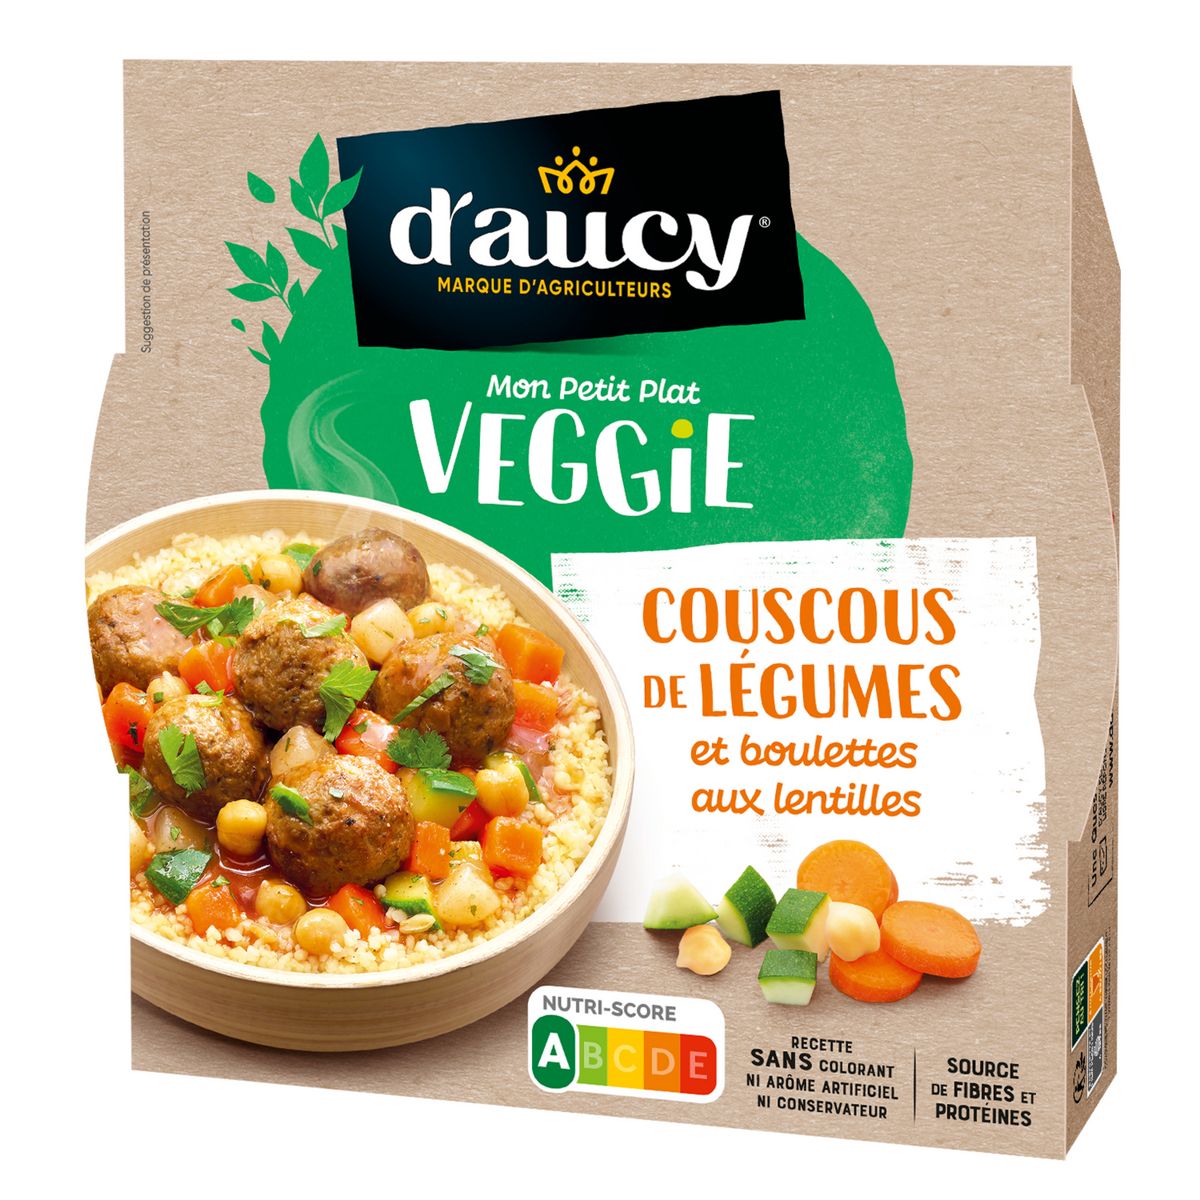 D'AUCY Couscous de légumes et boulettes aux lentilles veggie 320g